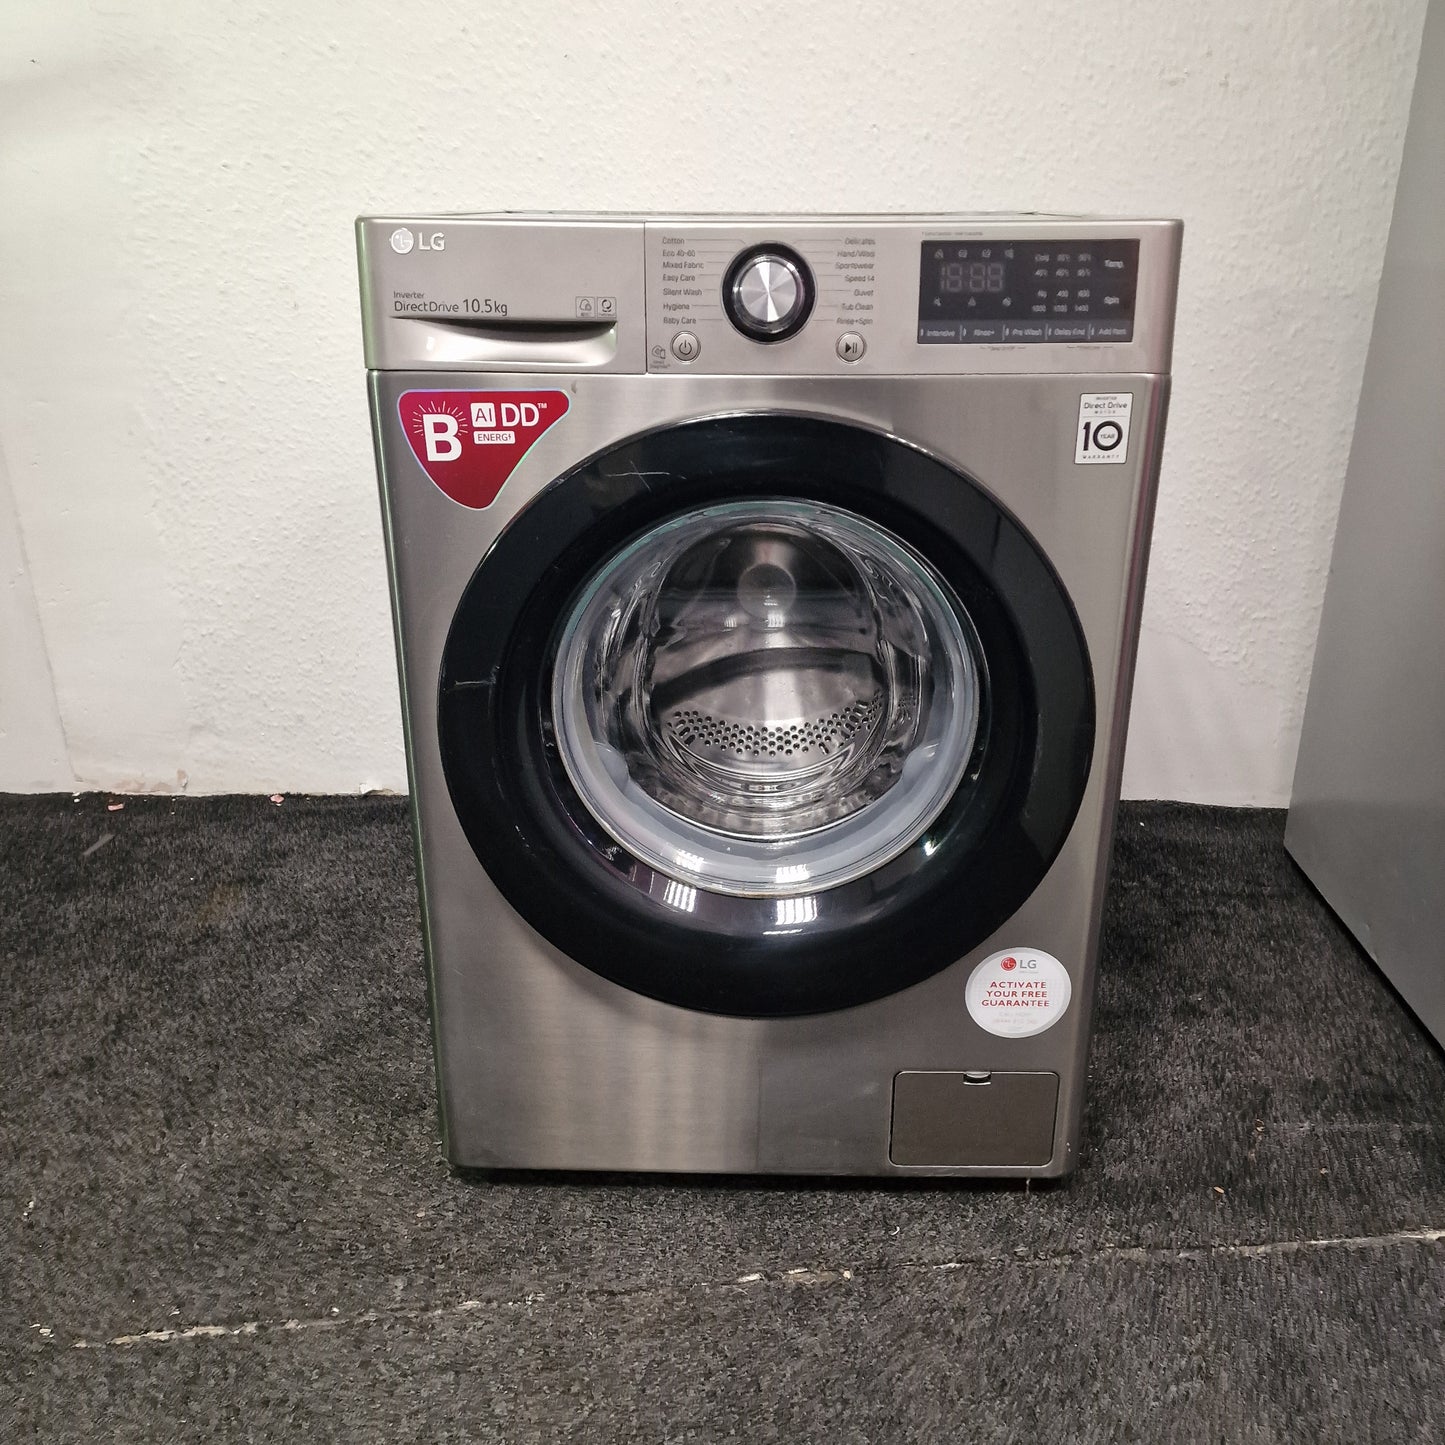 LG 10.5kg Washing Machine